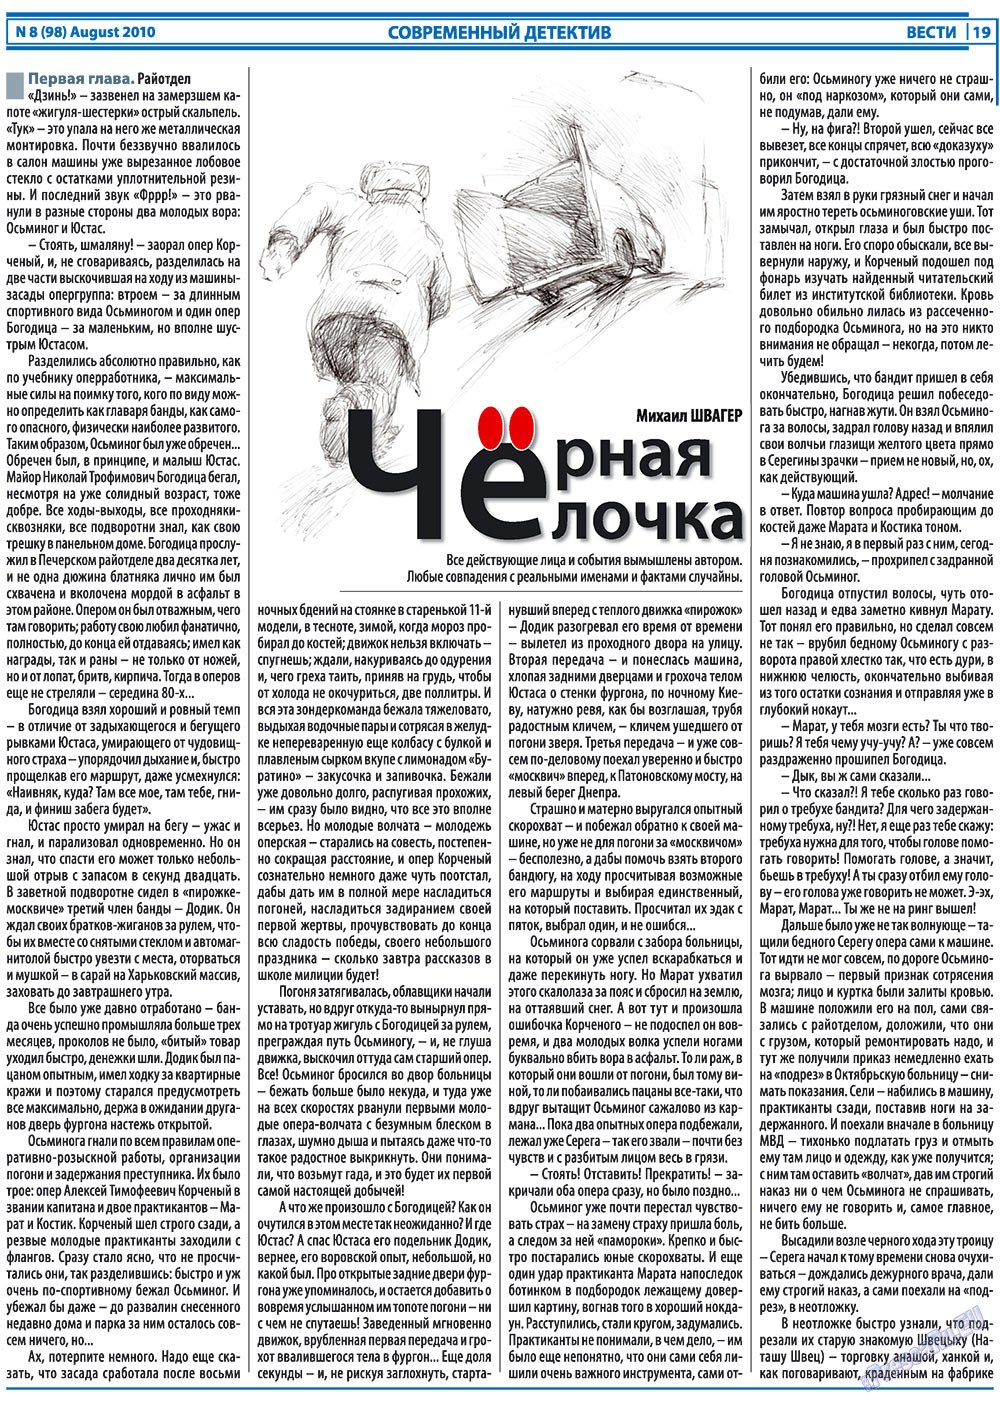 Вести, газета. 2010 №8 стр.19